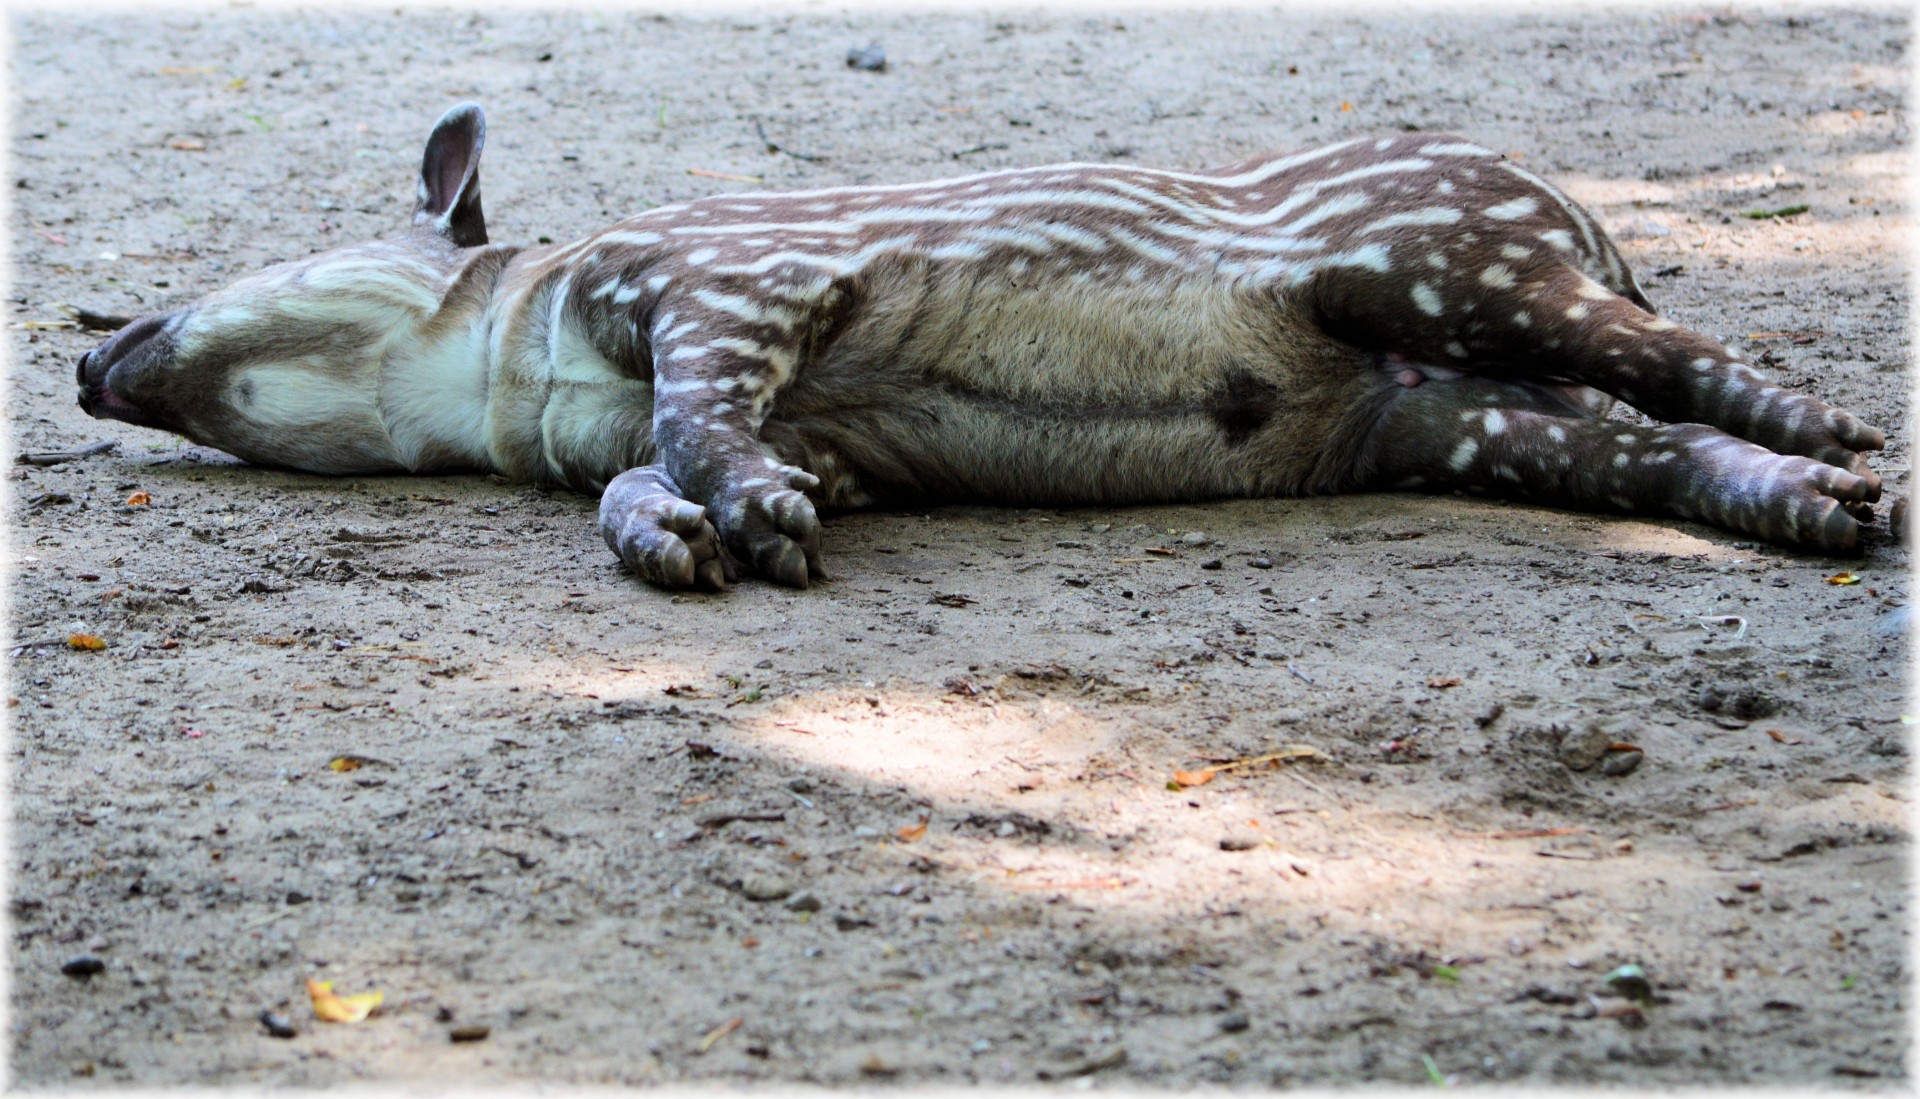 Young tapir to sunbathing